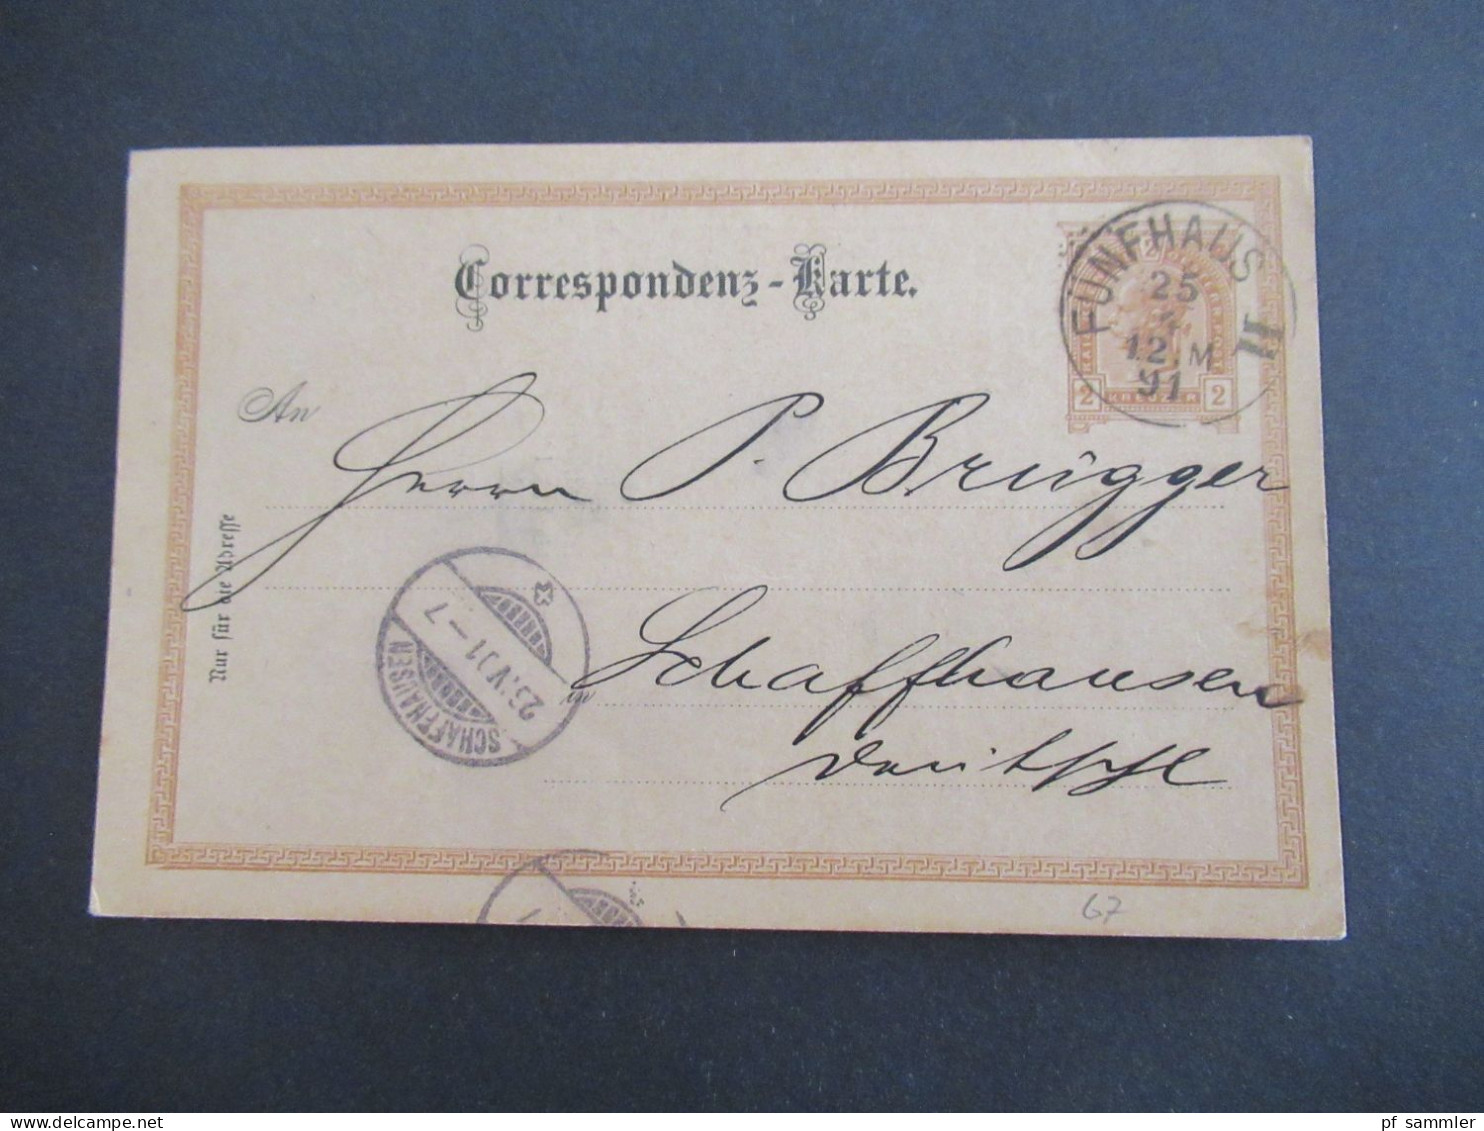 Österreich 1891 GA 2 Kreuzer Bedruckte PK Géza Baneth, Weingrosshandlung Wien Stempel Fünfhaus II - Schaffhausen Schweiz - Briefkaarten